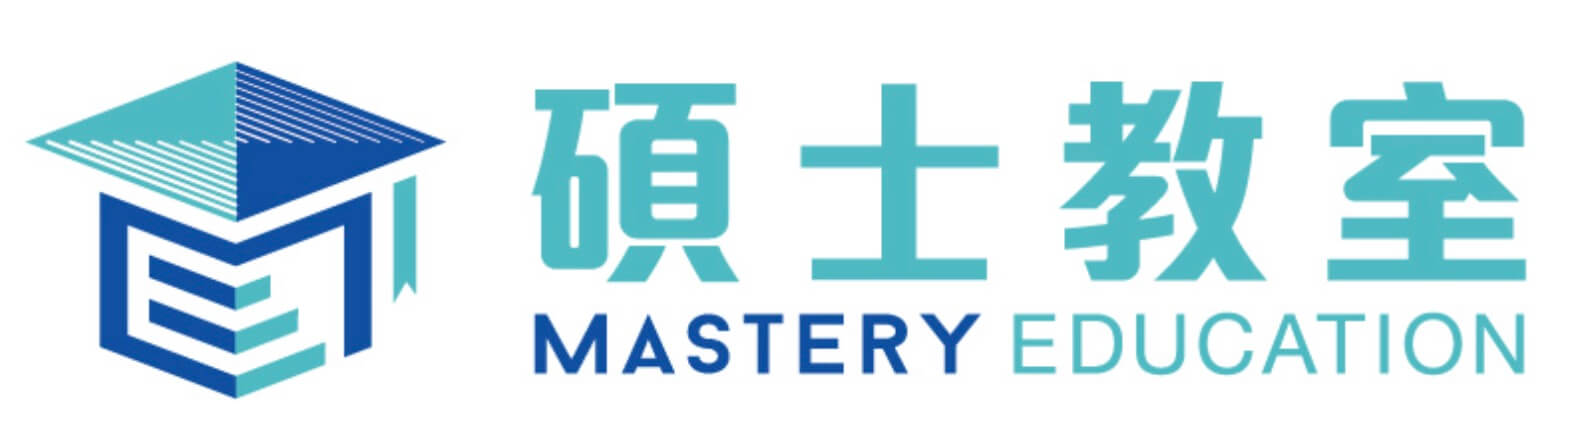 碩士教室 Mastery Education Centre的特許經營香港區加盟店項目1